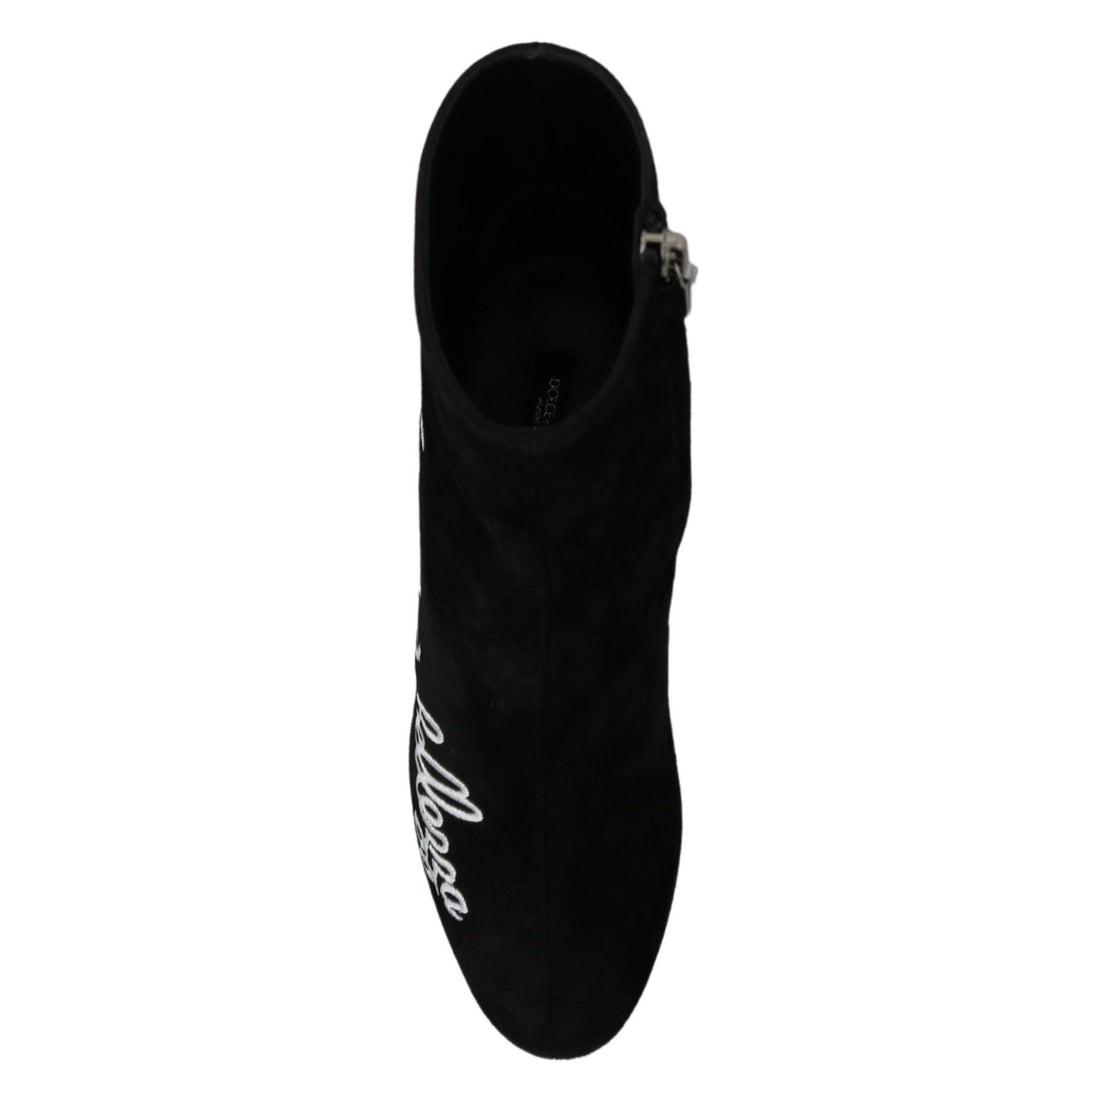 Dolce & Gabbana Black Suede L'Amore E'Bellezza Boots Shoes - Paris Deluxe